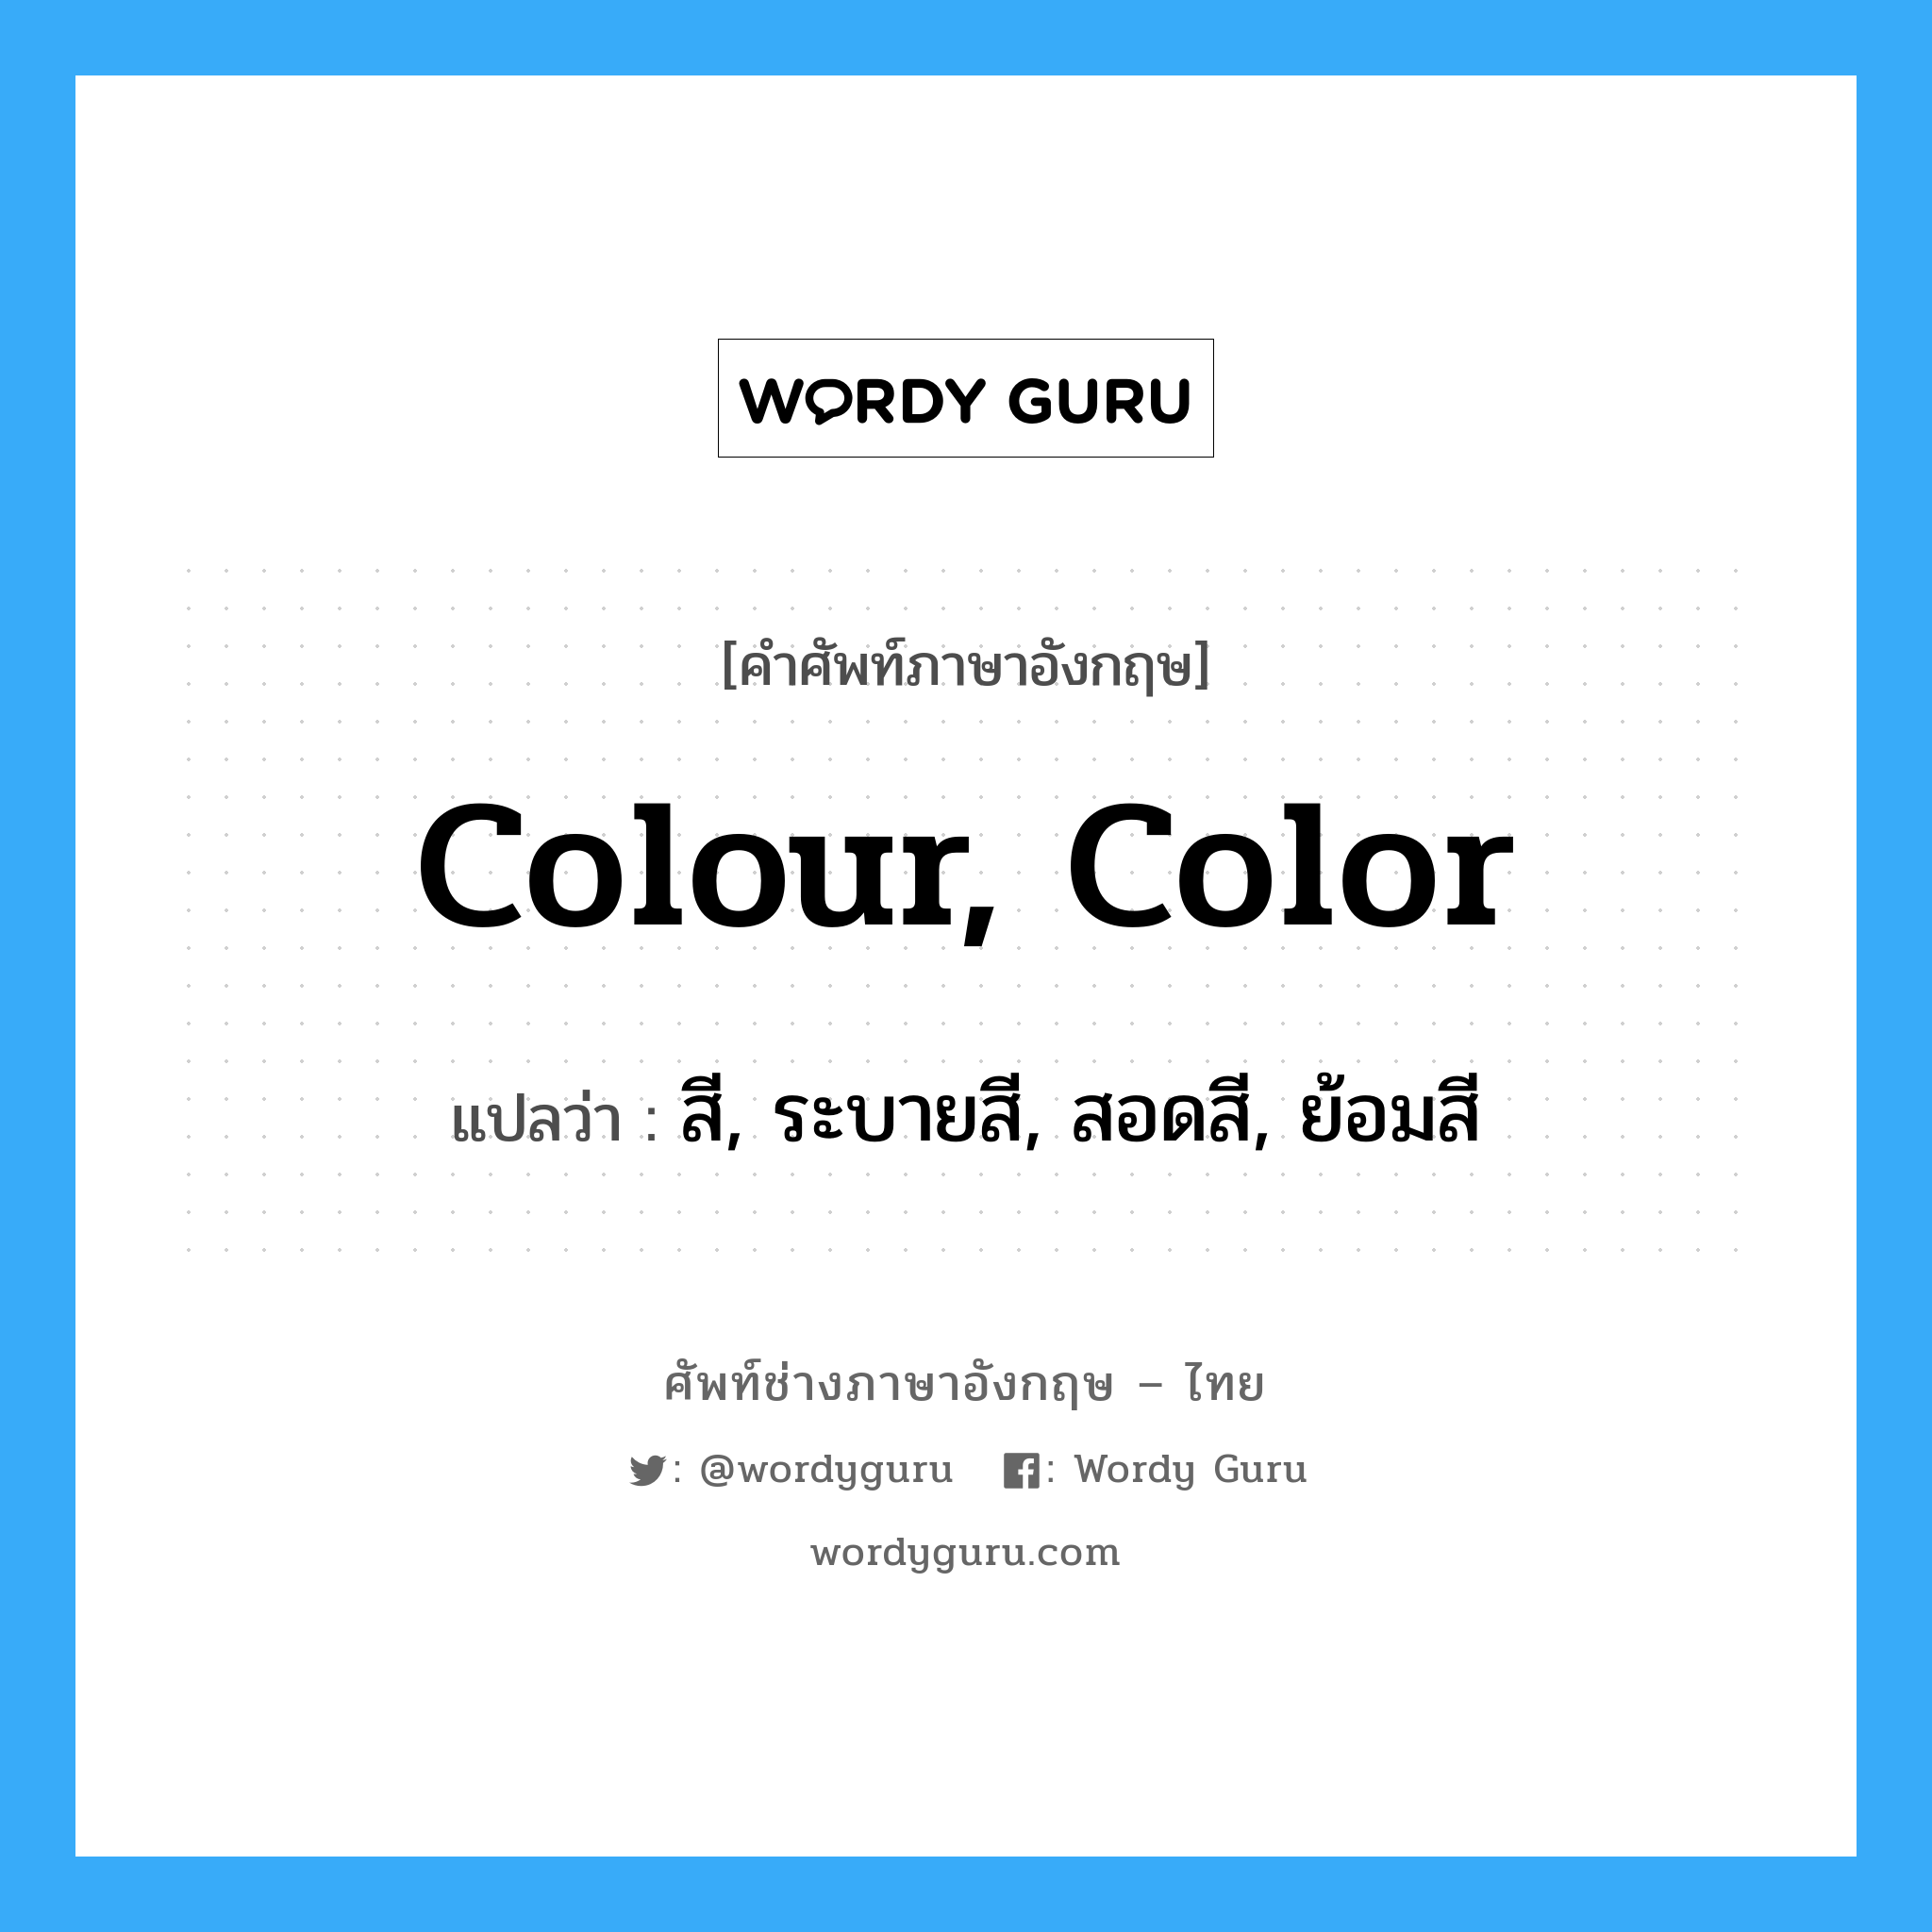 สี, ระบายสี, สอดสี, ย้อมสี ภาษาอังกฤษ?, คำศัพท์ช่างภาษาอังกฤษ - ไทย สี, ระบายสี, สอดสี, ย้อมสี คำศัพท์ภาษาอังกฤษ สี, ระบายสี, สอดสี, ย้อมสี แปลว่า colour, color